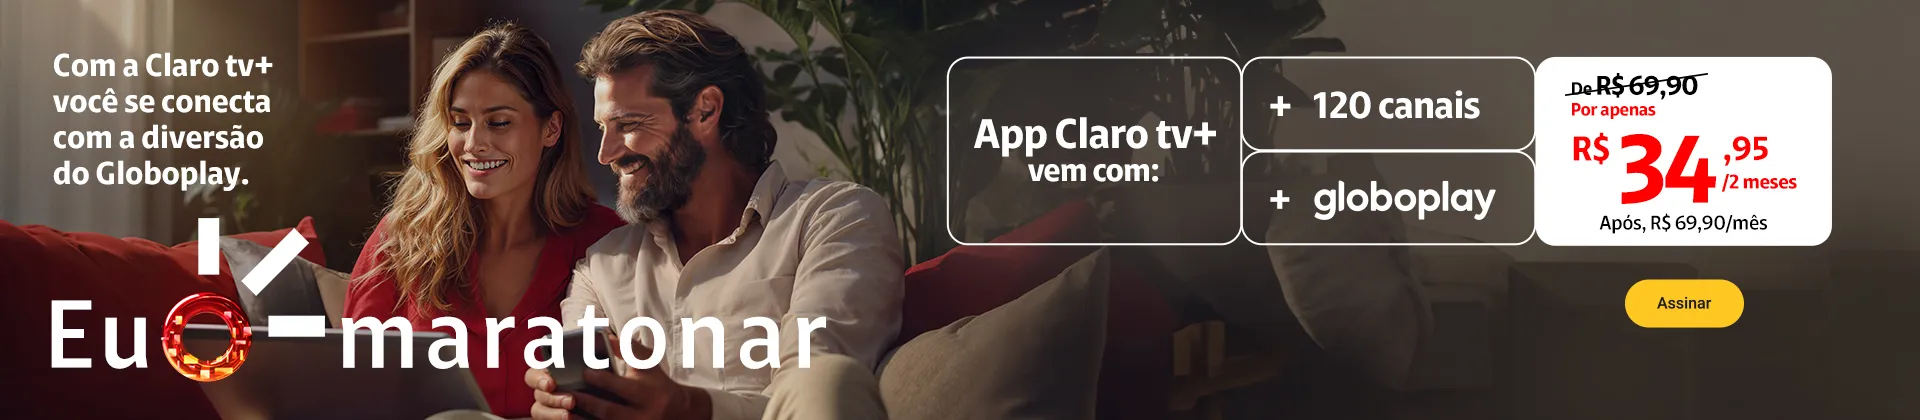 App Claro tv+ com Globoplay